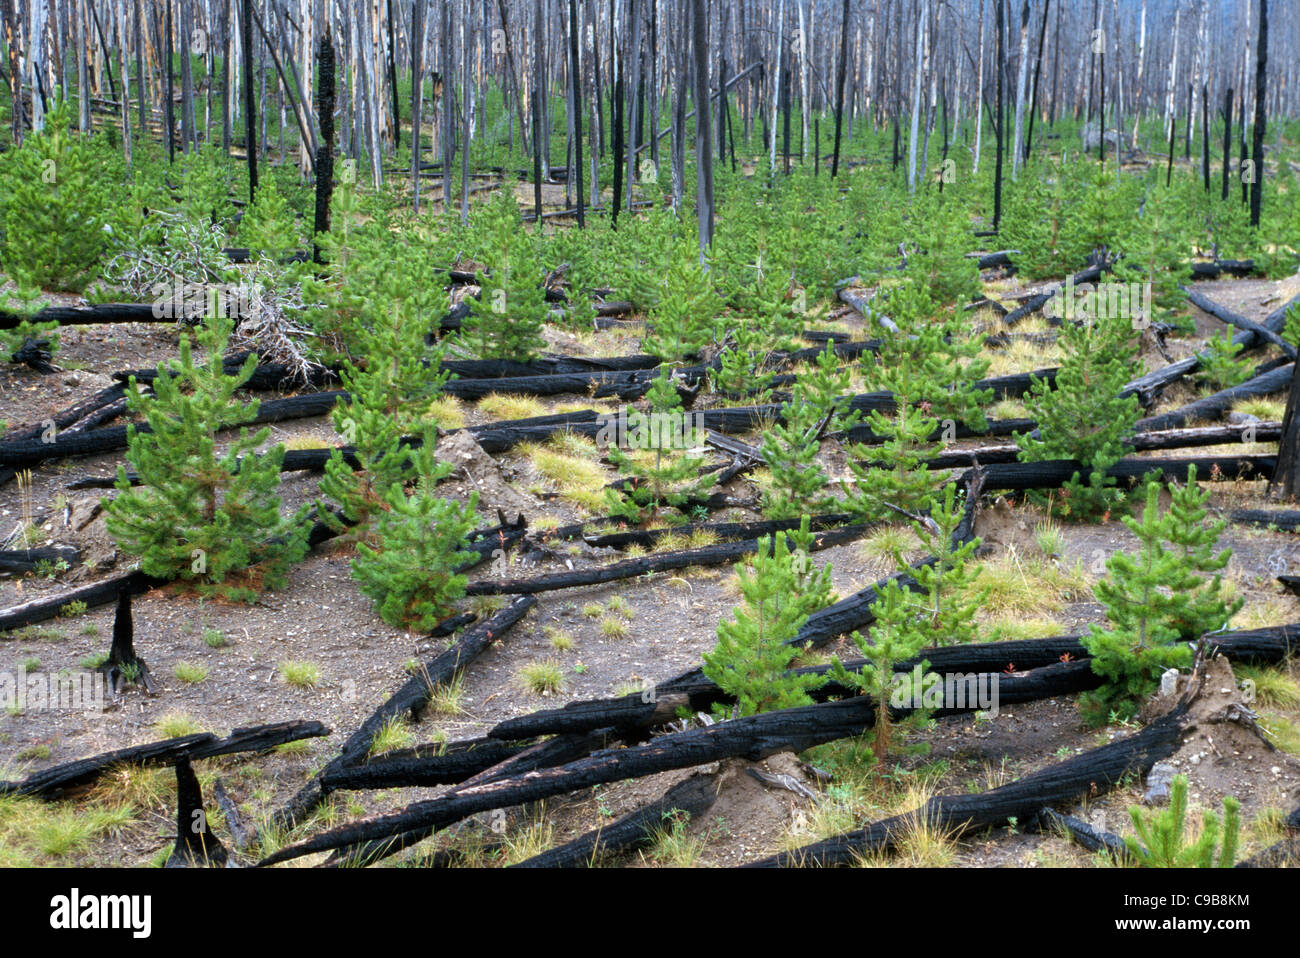 Студенты изучают уникальные экосистемы ненарушенной тайги. Естественное лесовосстановление на Гарях. Естественное возобновление леса. Естественное возобновление леса после пожара. Восстановление леса после пожара.